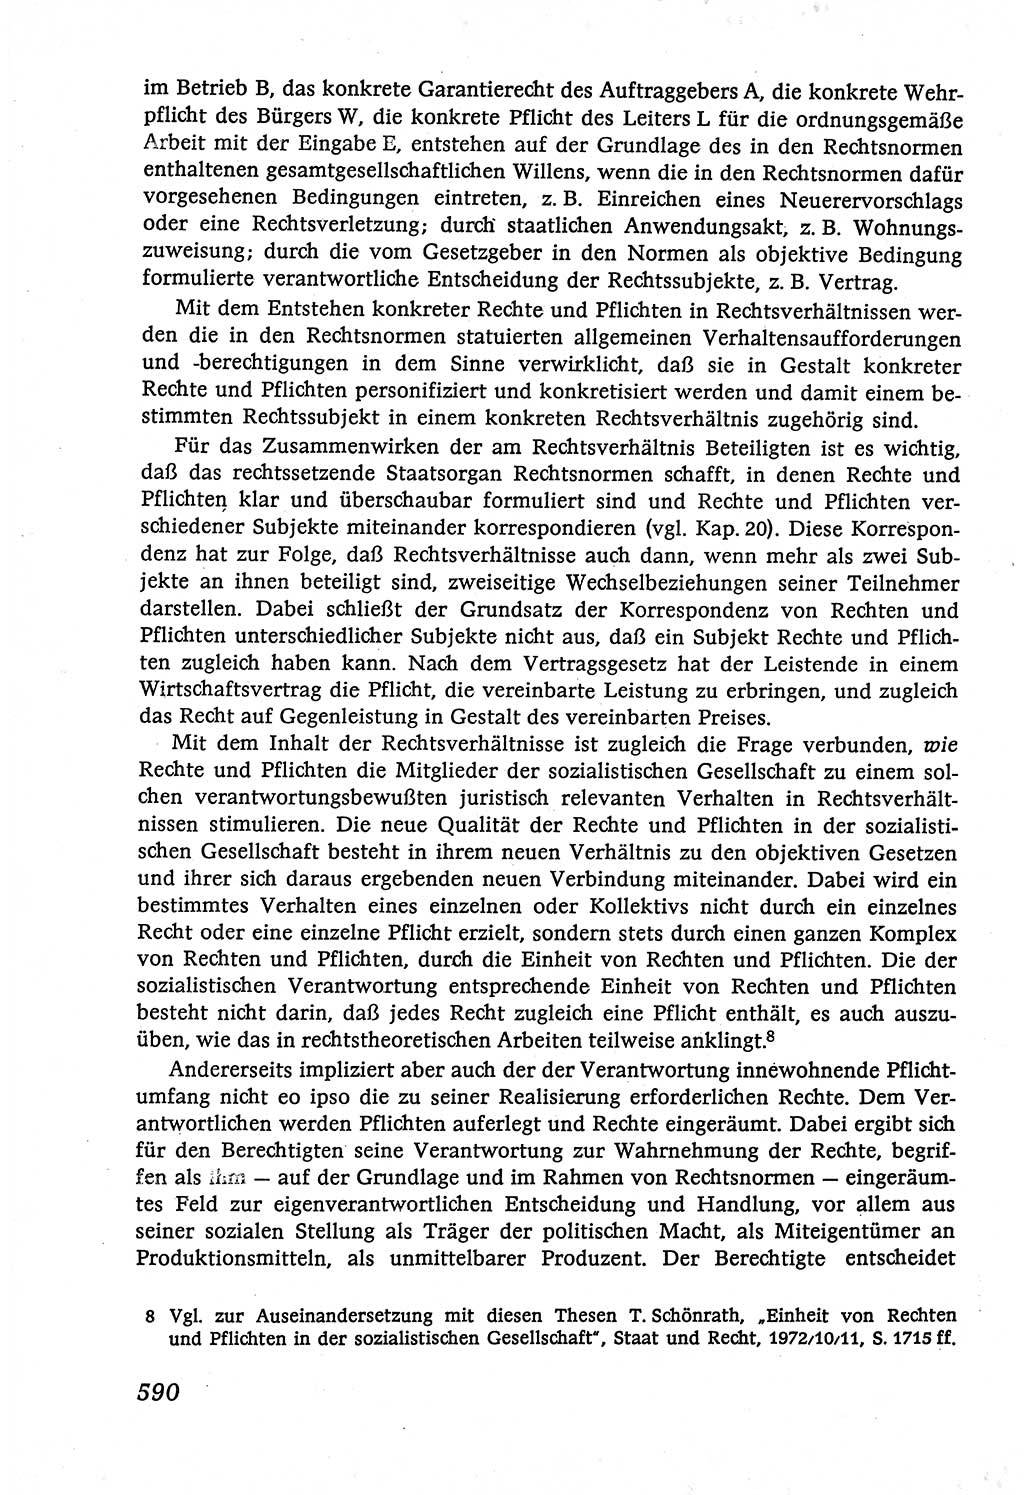 Marxistisch-leninistische (ML) Staats- und Rechtstheorie [Deutsche Demokratische Republik (DDR)], Lehrbuch 1980, Seite 590 (ML St.-R.-Th. DDR Lb. 1980, S. 590)